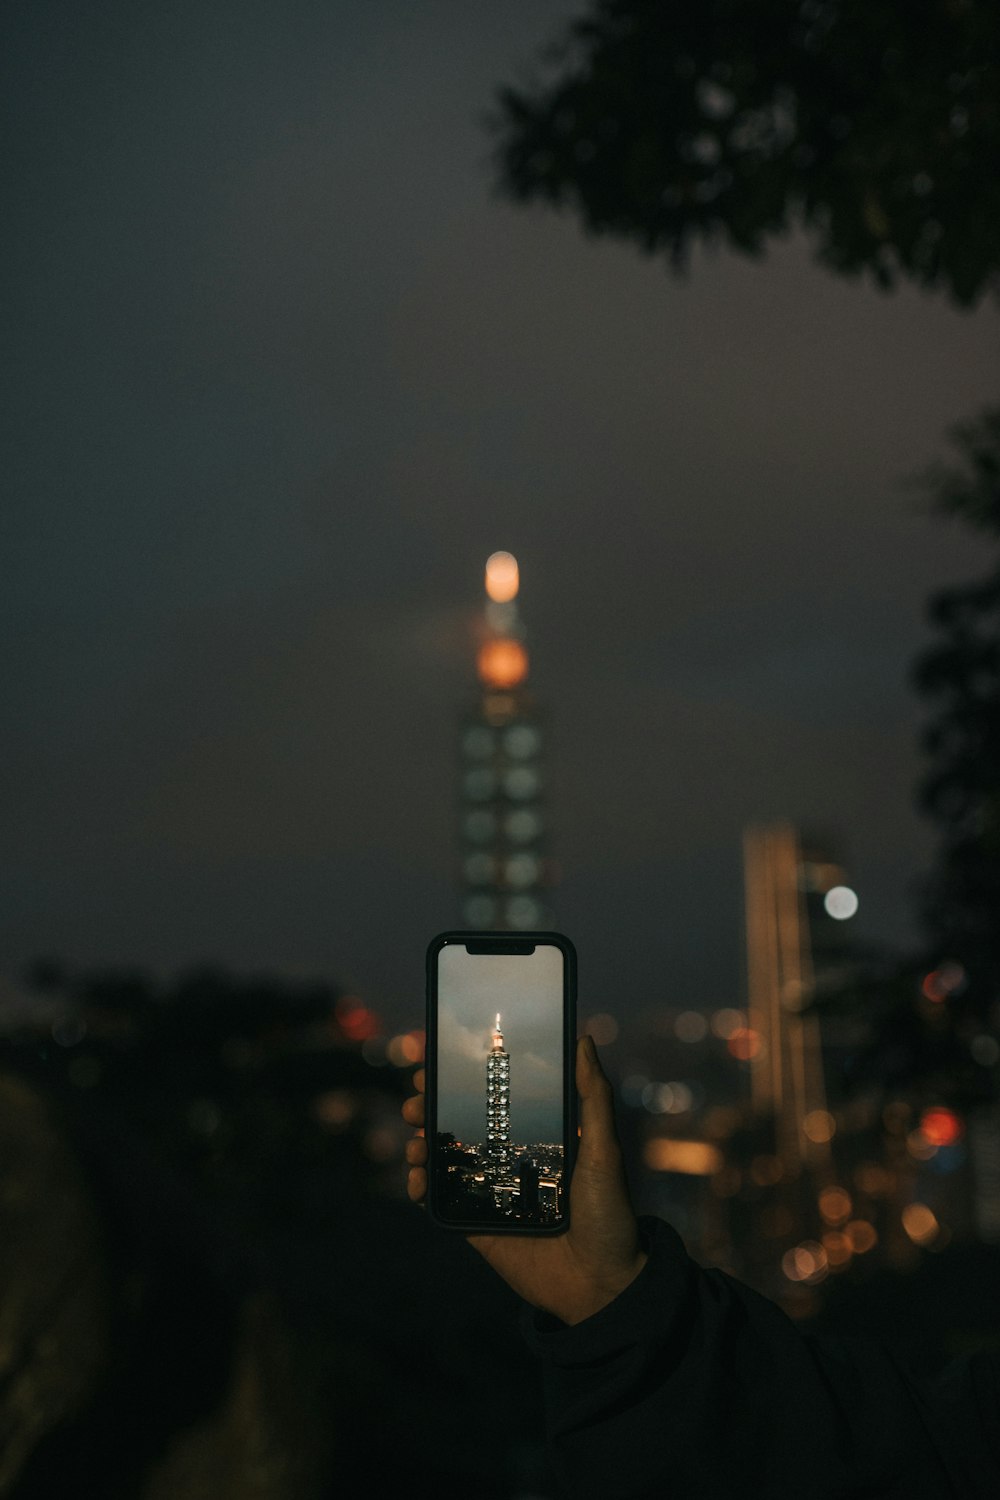 Person, die nachts Fotos von den Lichtern der Stadt macht